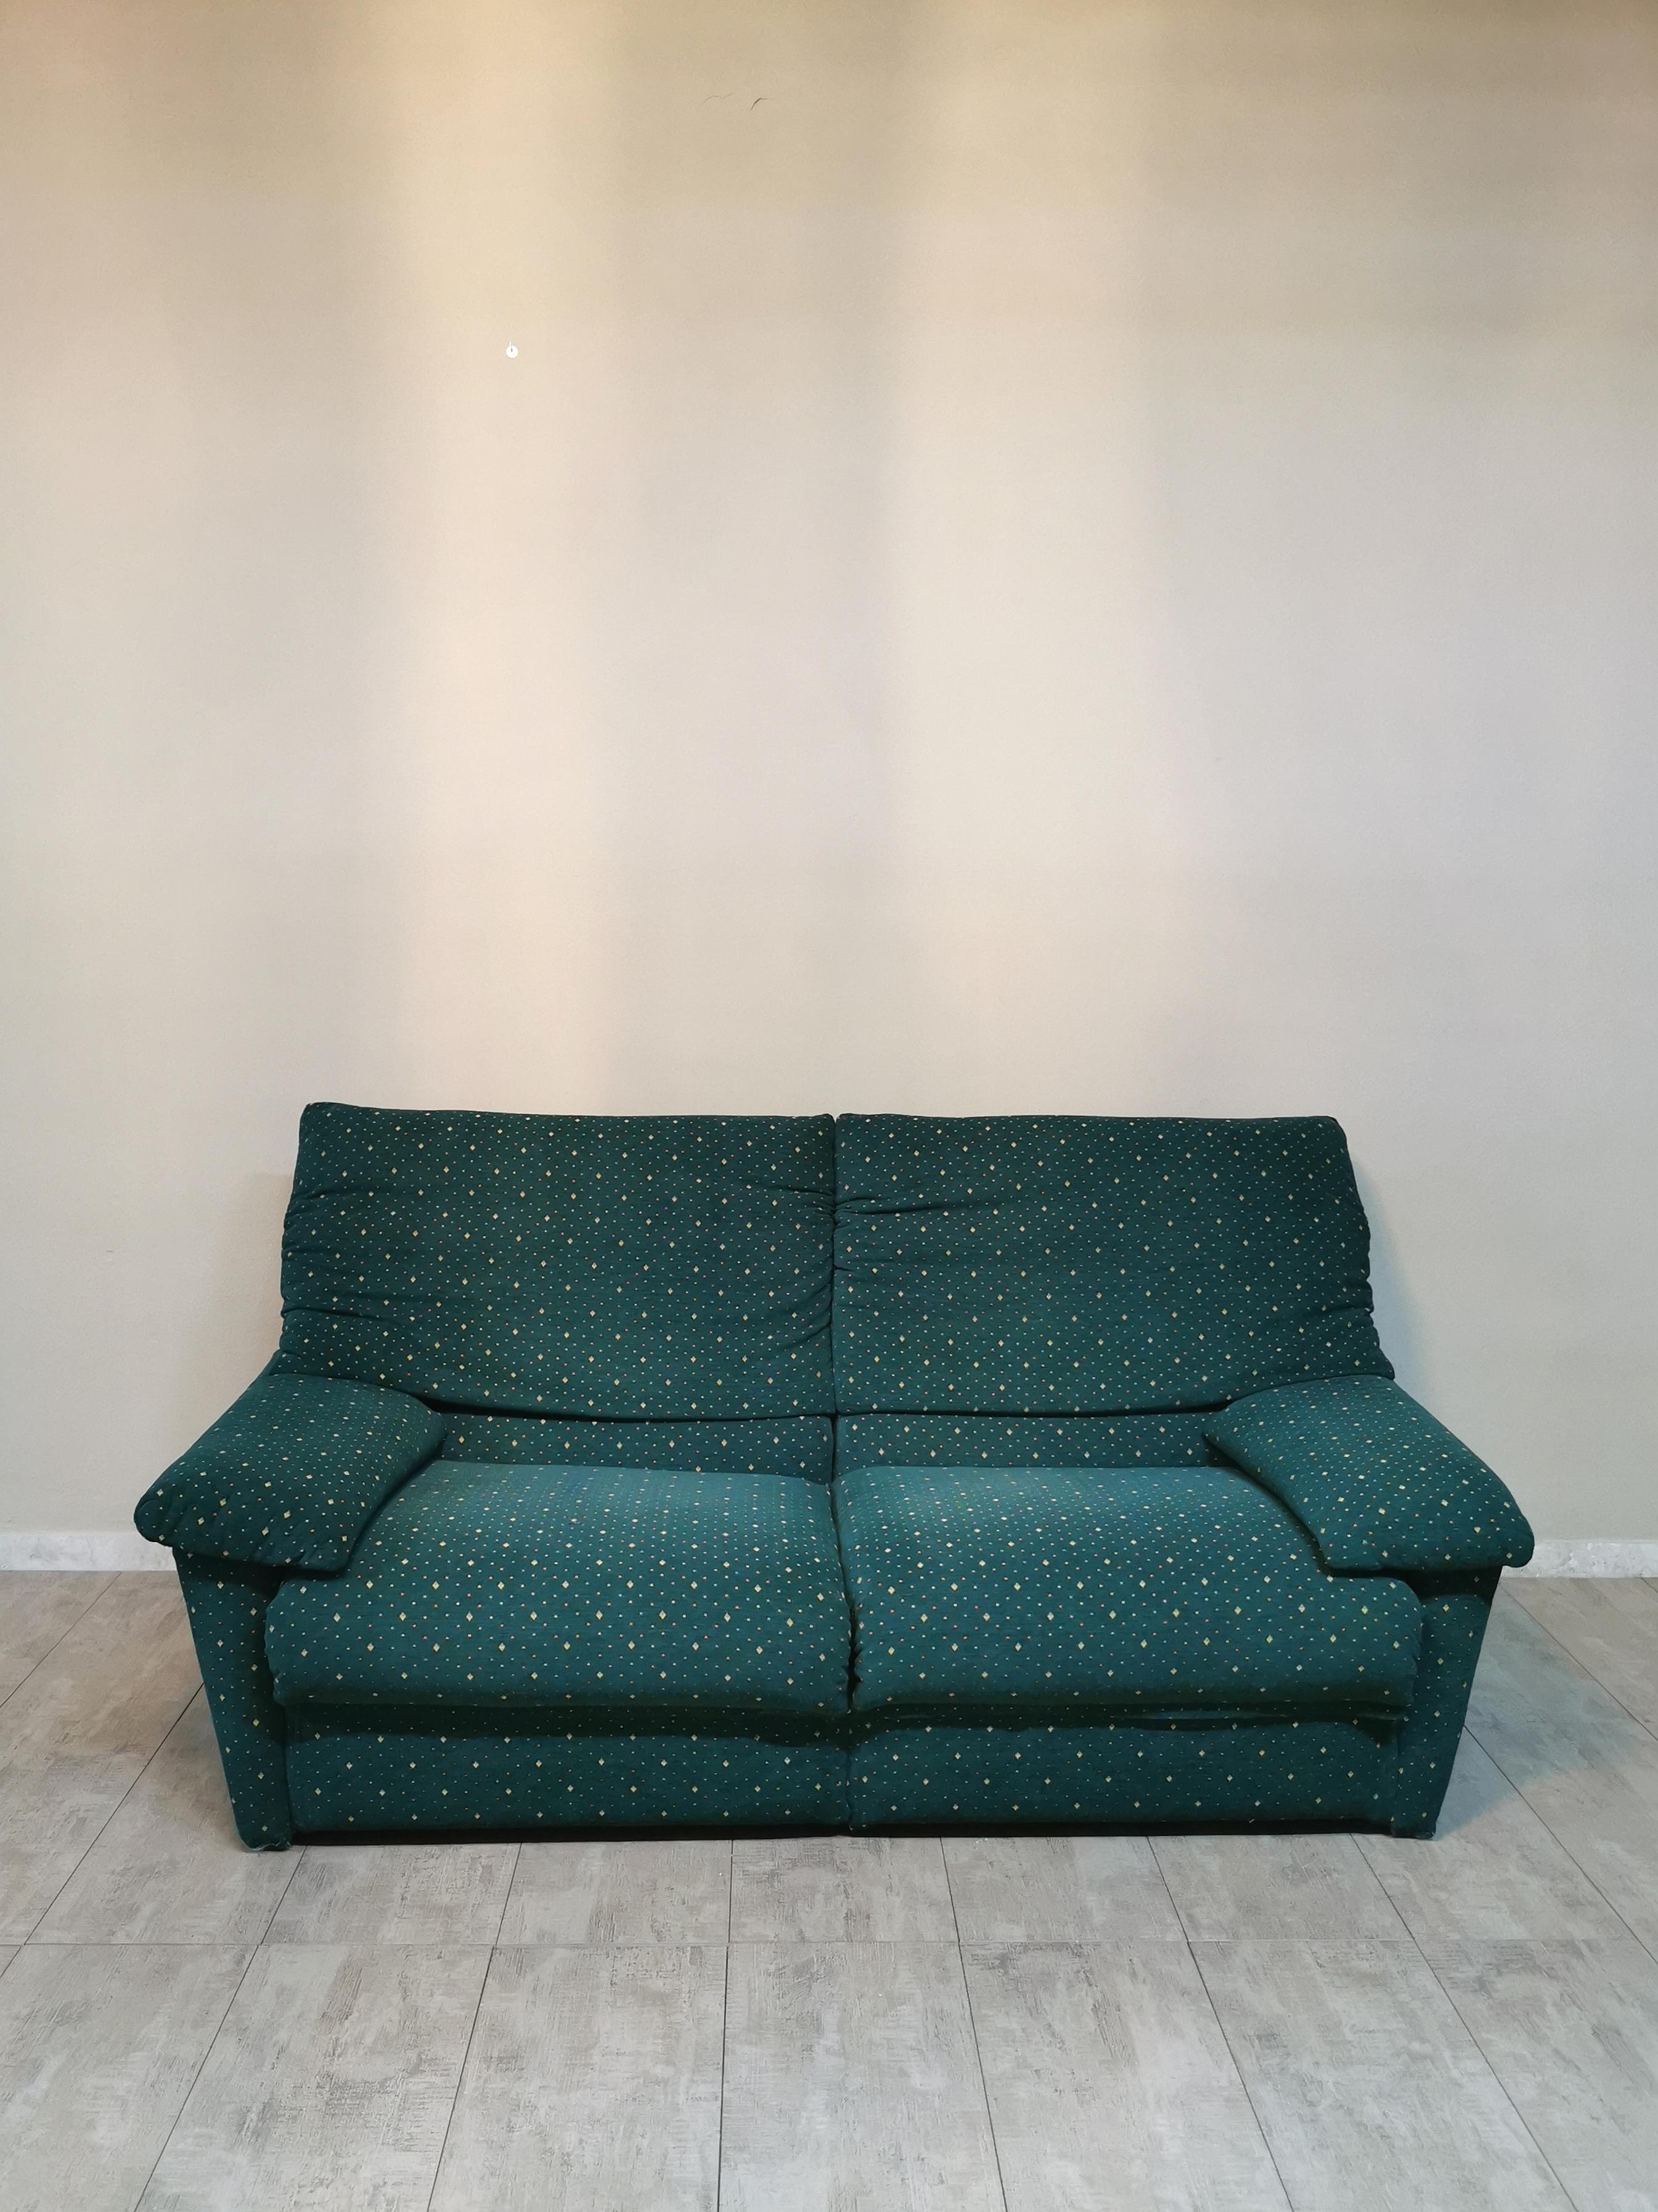 Post-Modern  Sofa Green Velvet 3 Seat by Pol 74 Postmodern Italian Design 1990s